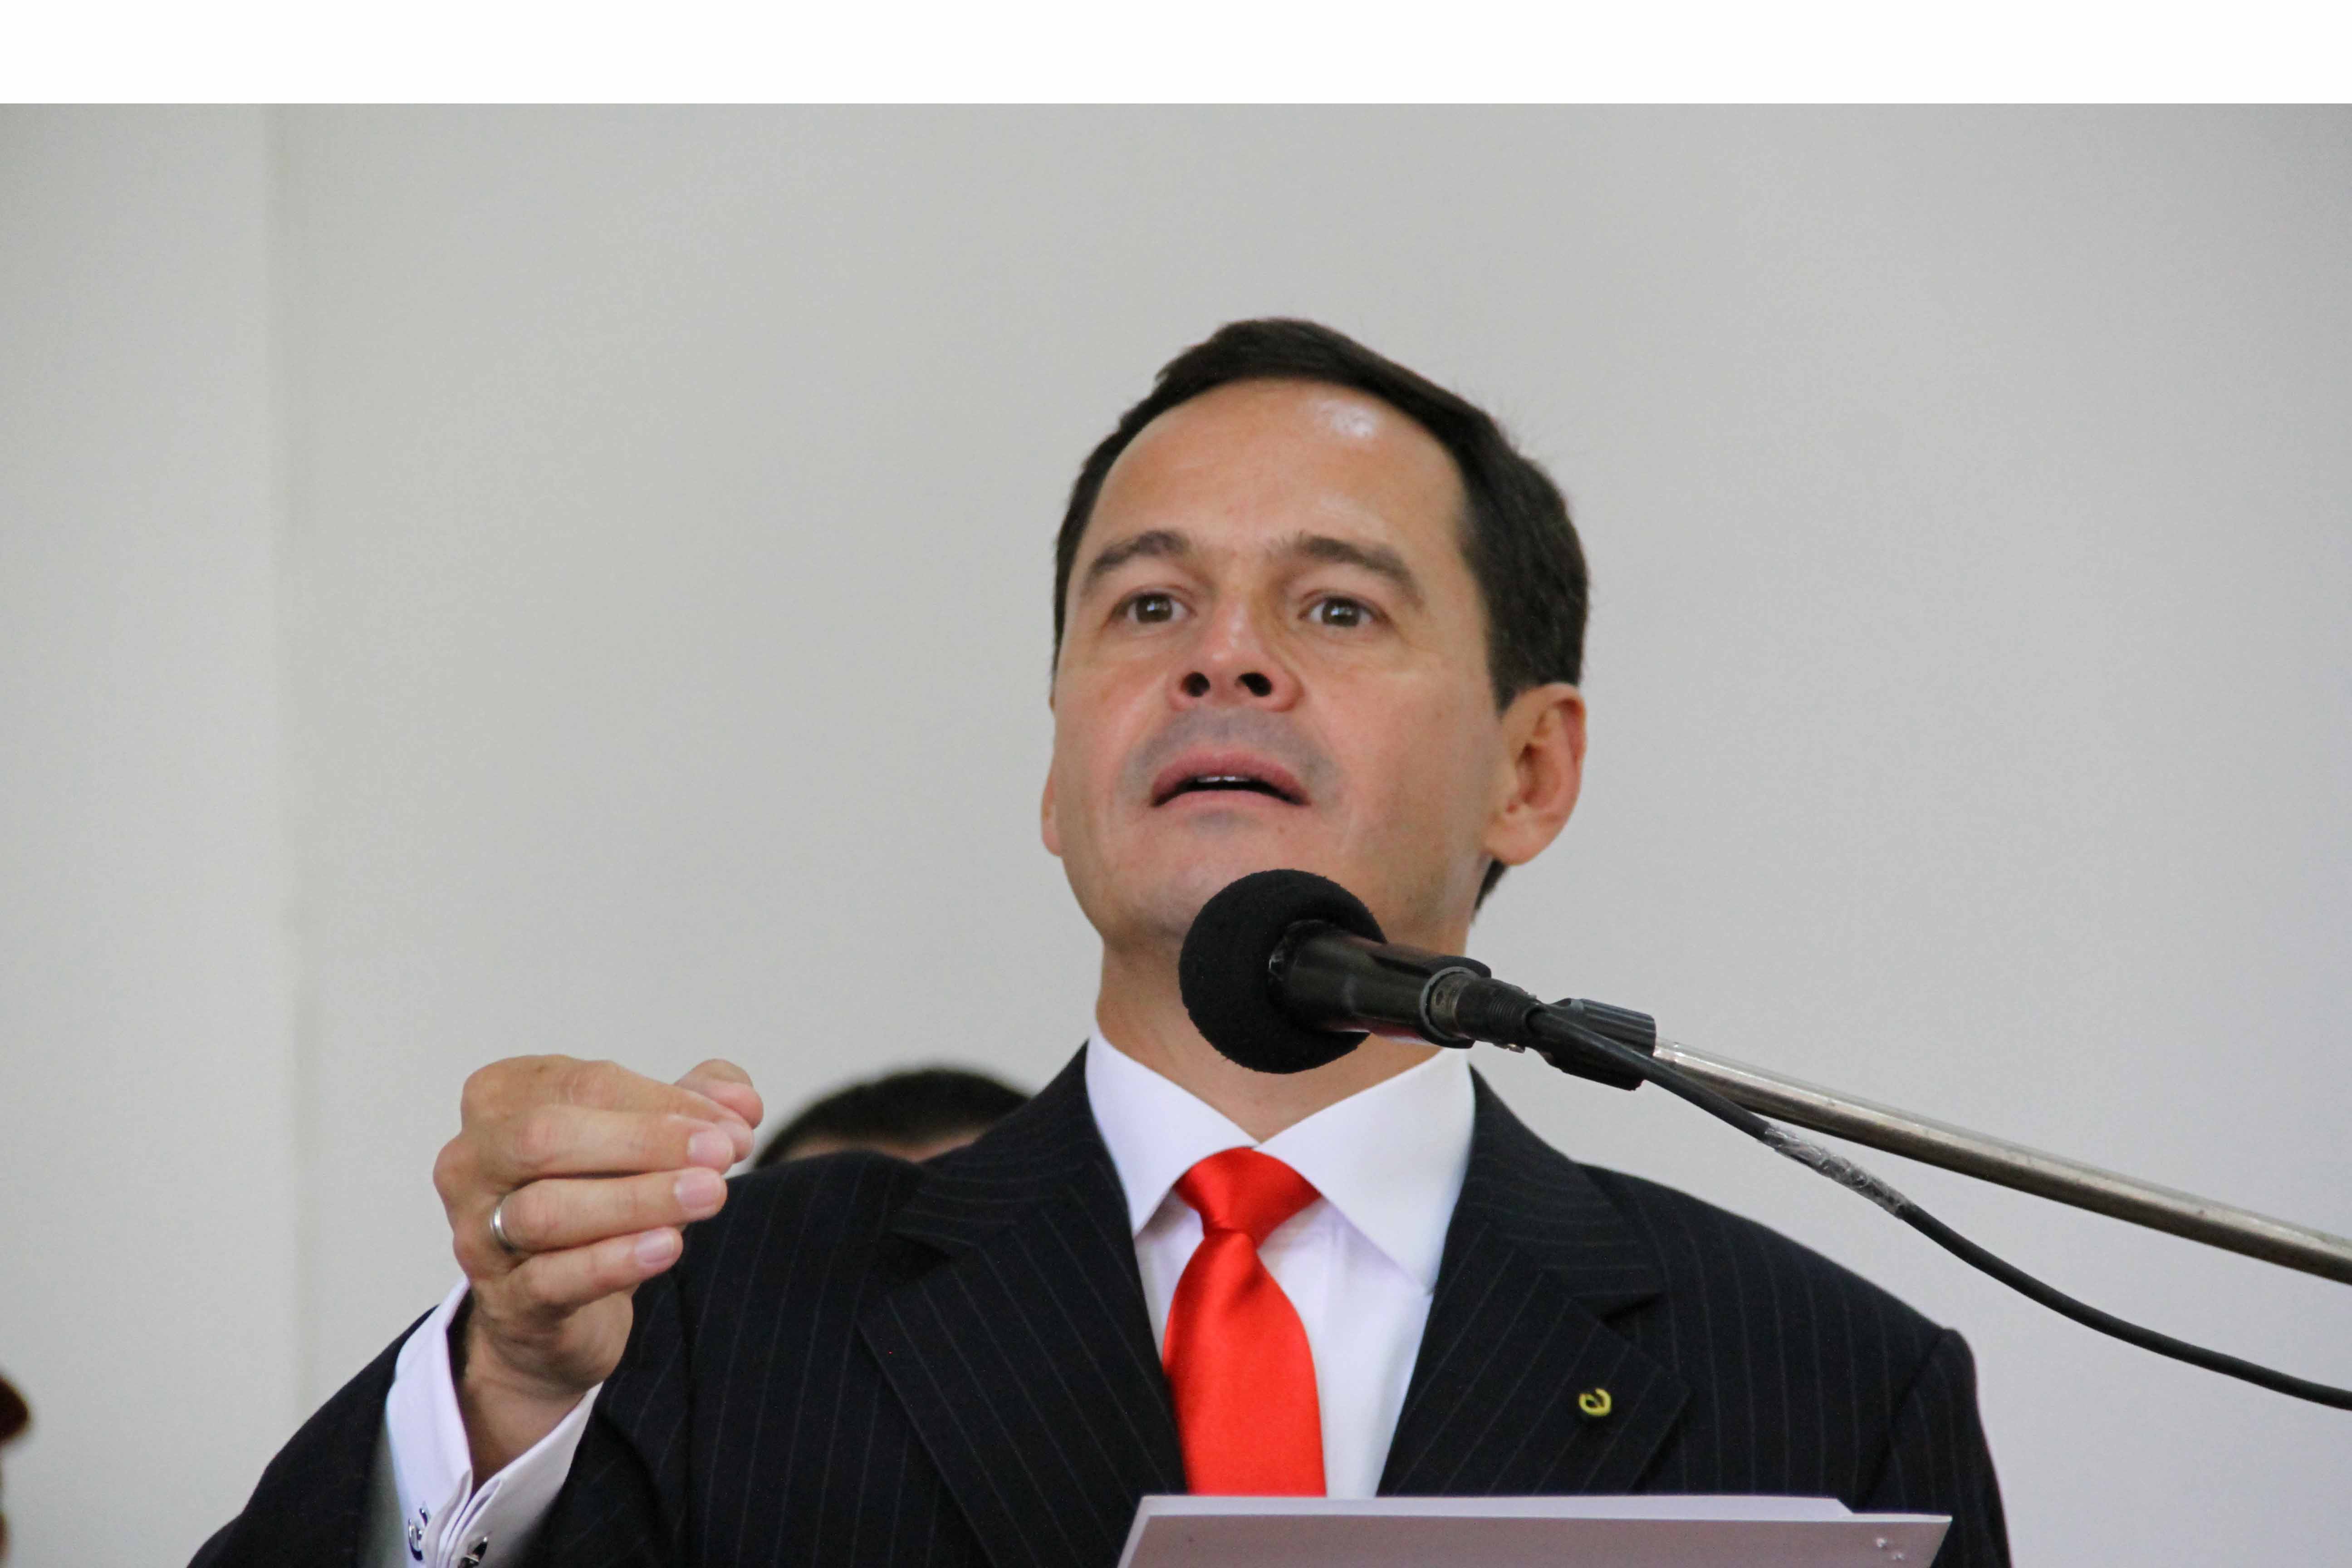 El Gobernador del estado Táchira anunció que este lunes iniciarán las conversaciones para realizar este procedimiento respetando las leyes